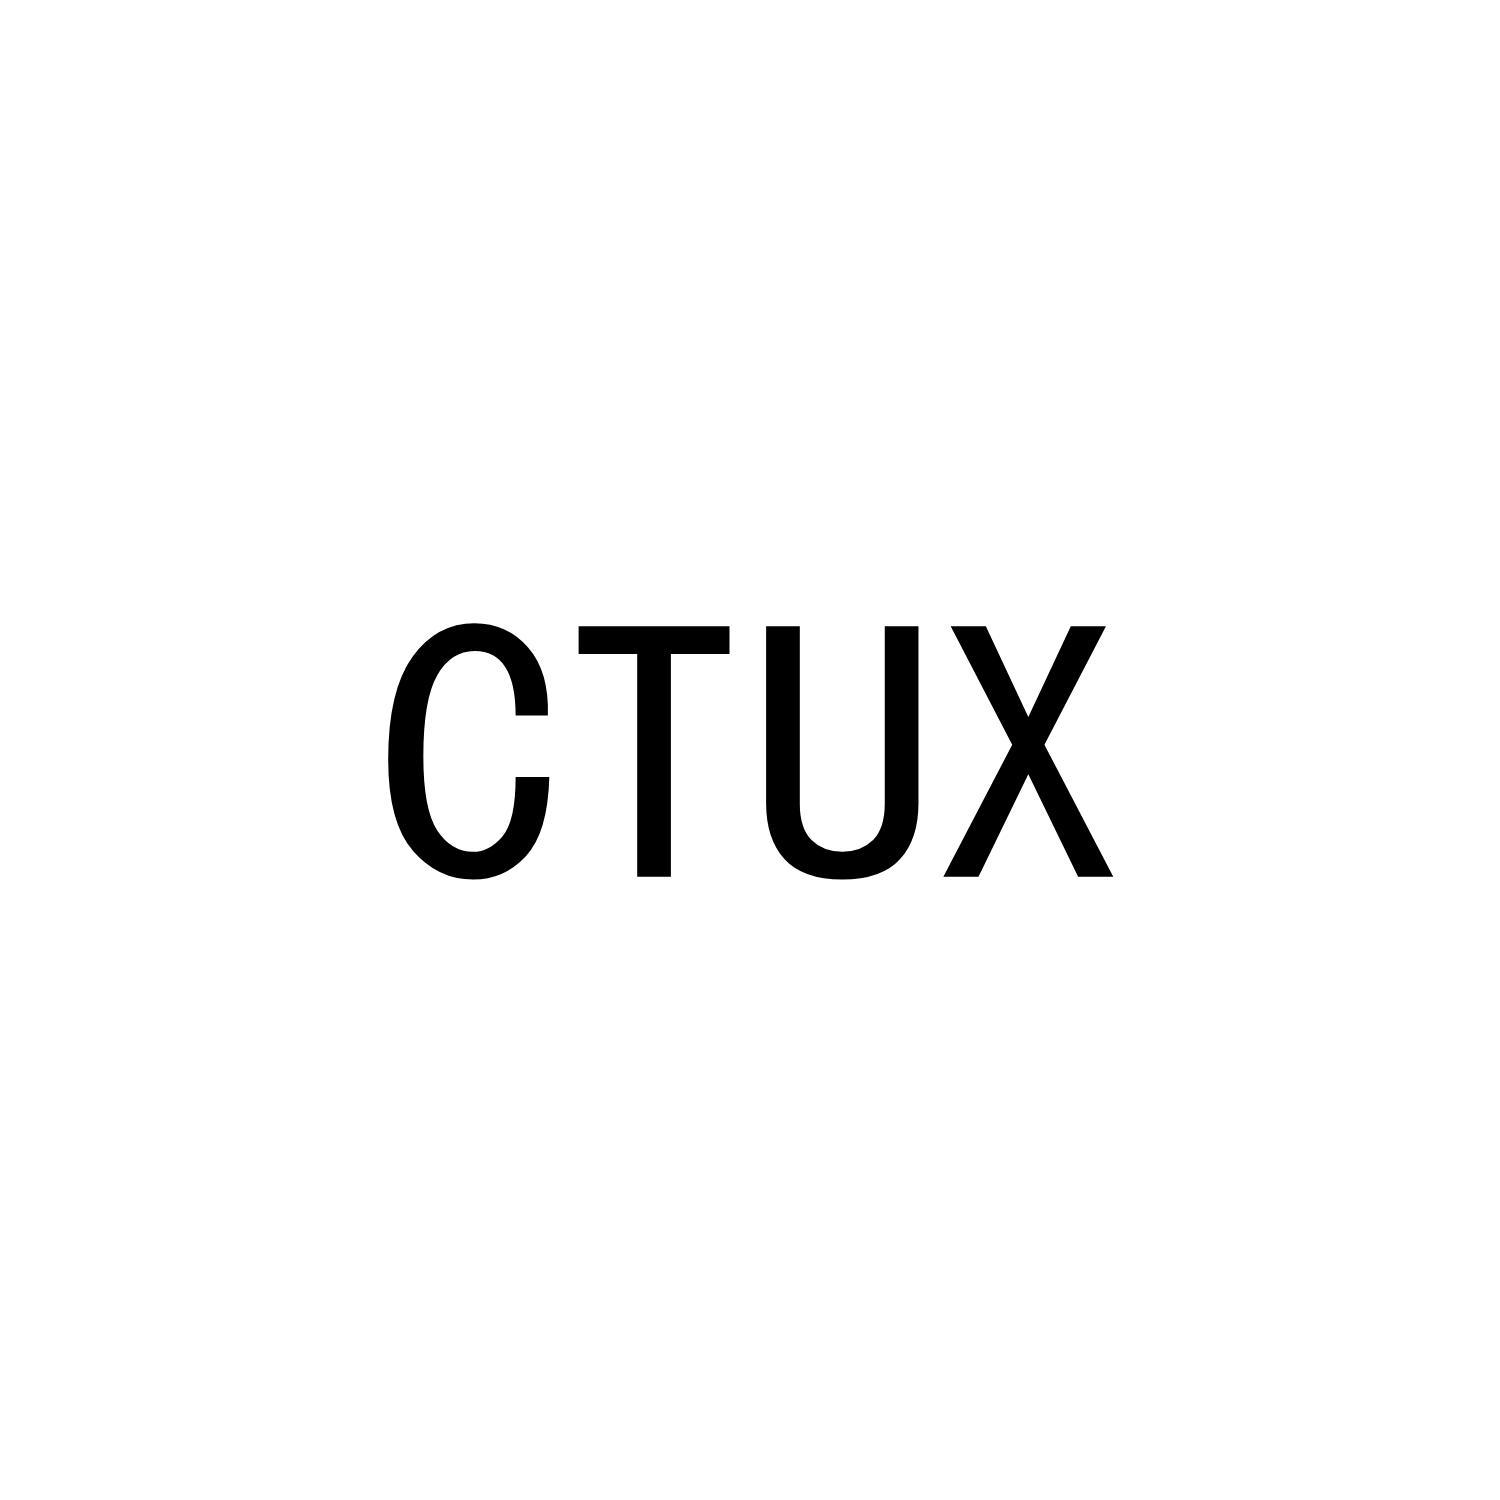 CTUX